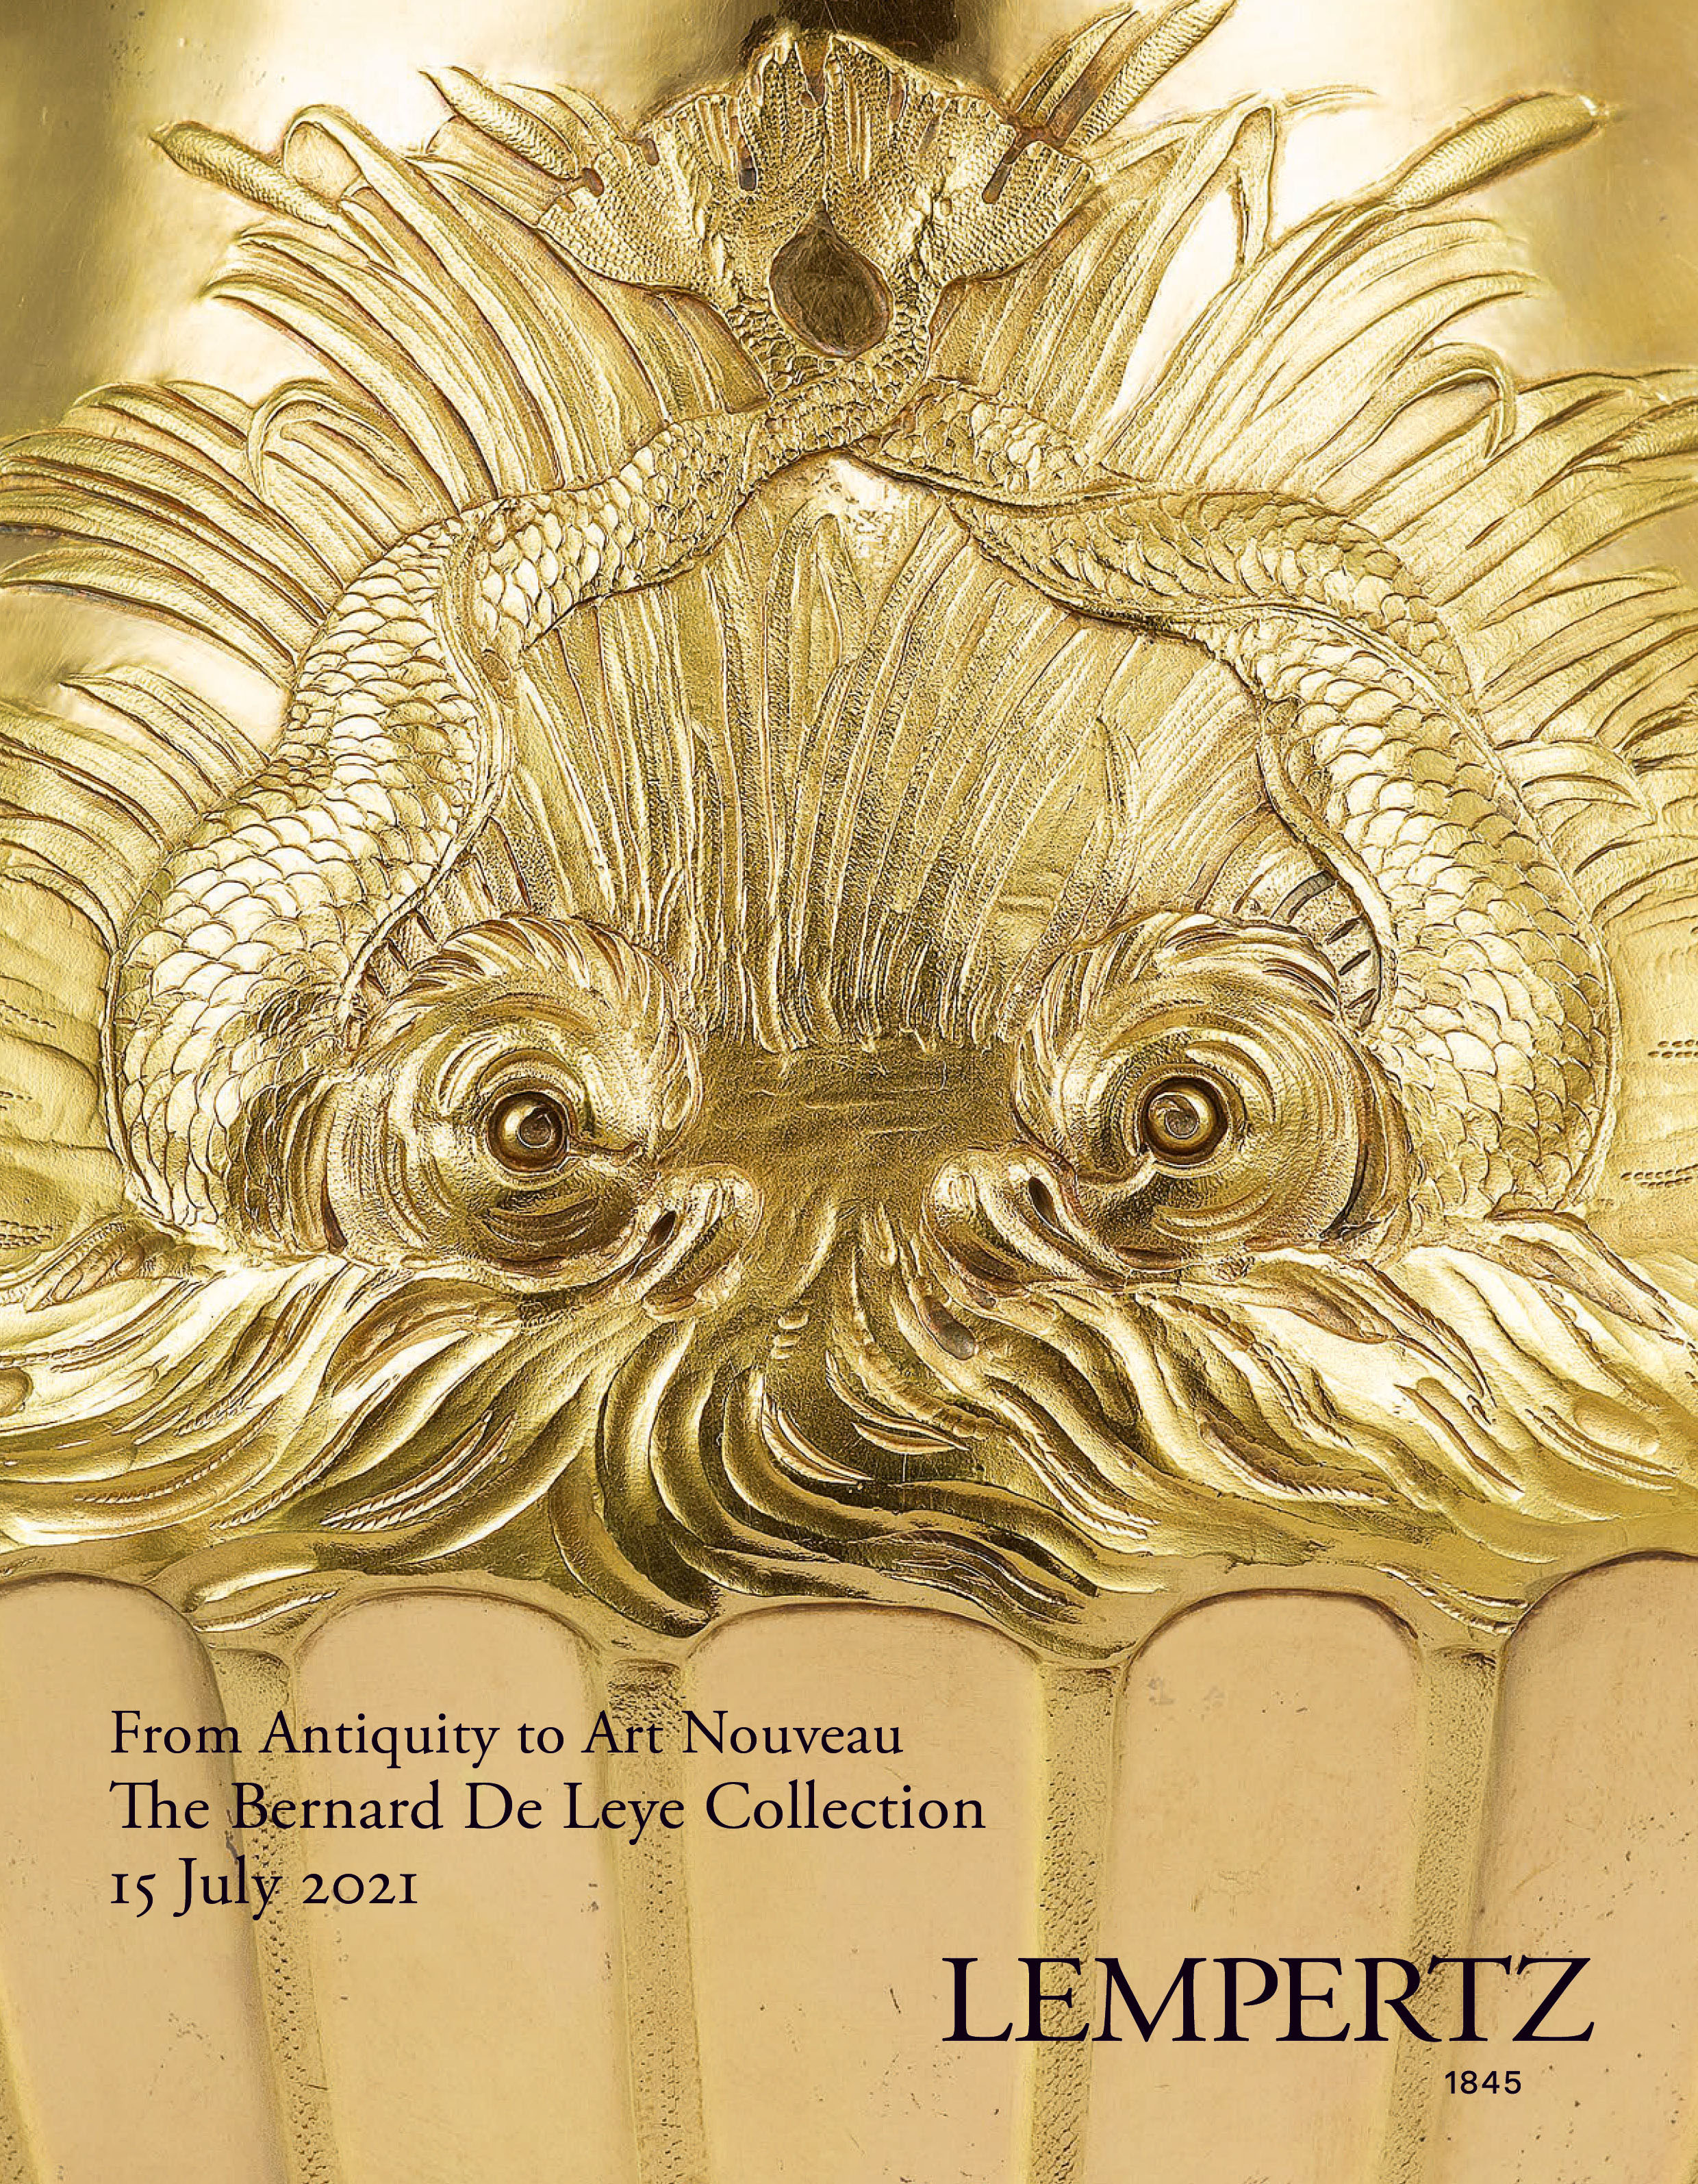 Auktionskatalog - The Exceptional Bernard De Leye Collection - Online Katalog - Auktion 1182 – Ersteigern Sie hochwertige Kunst in der nächsten Lempertz-Auktion!